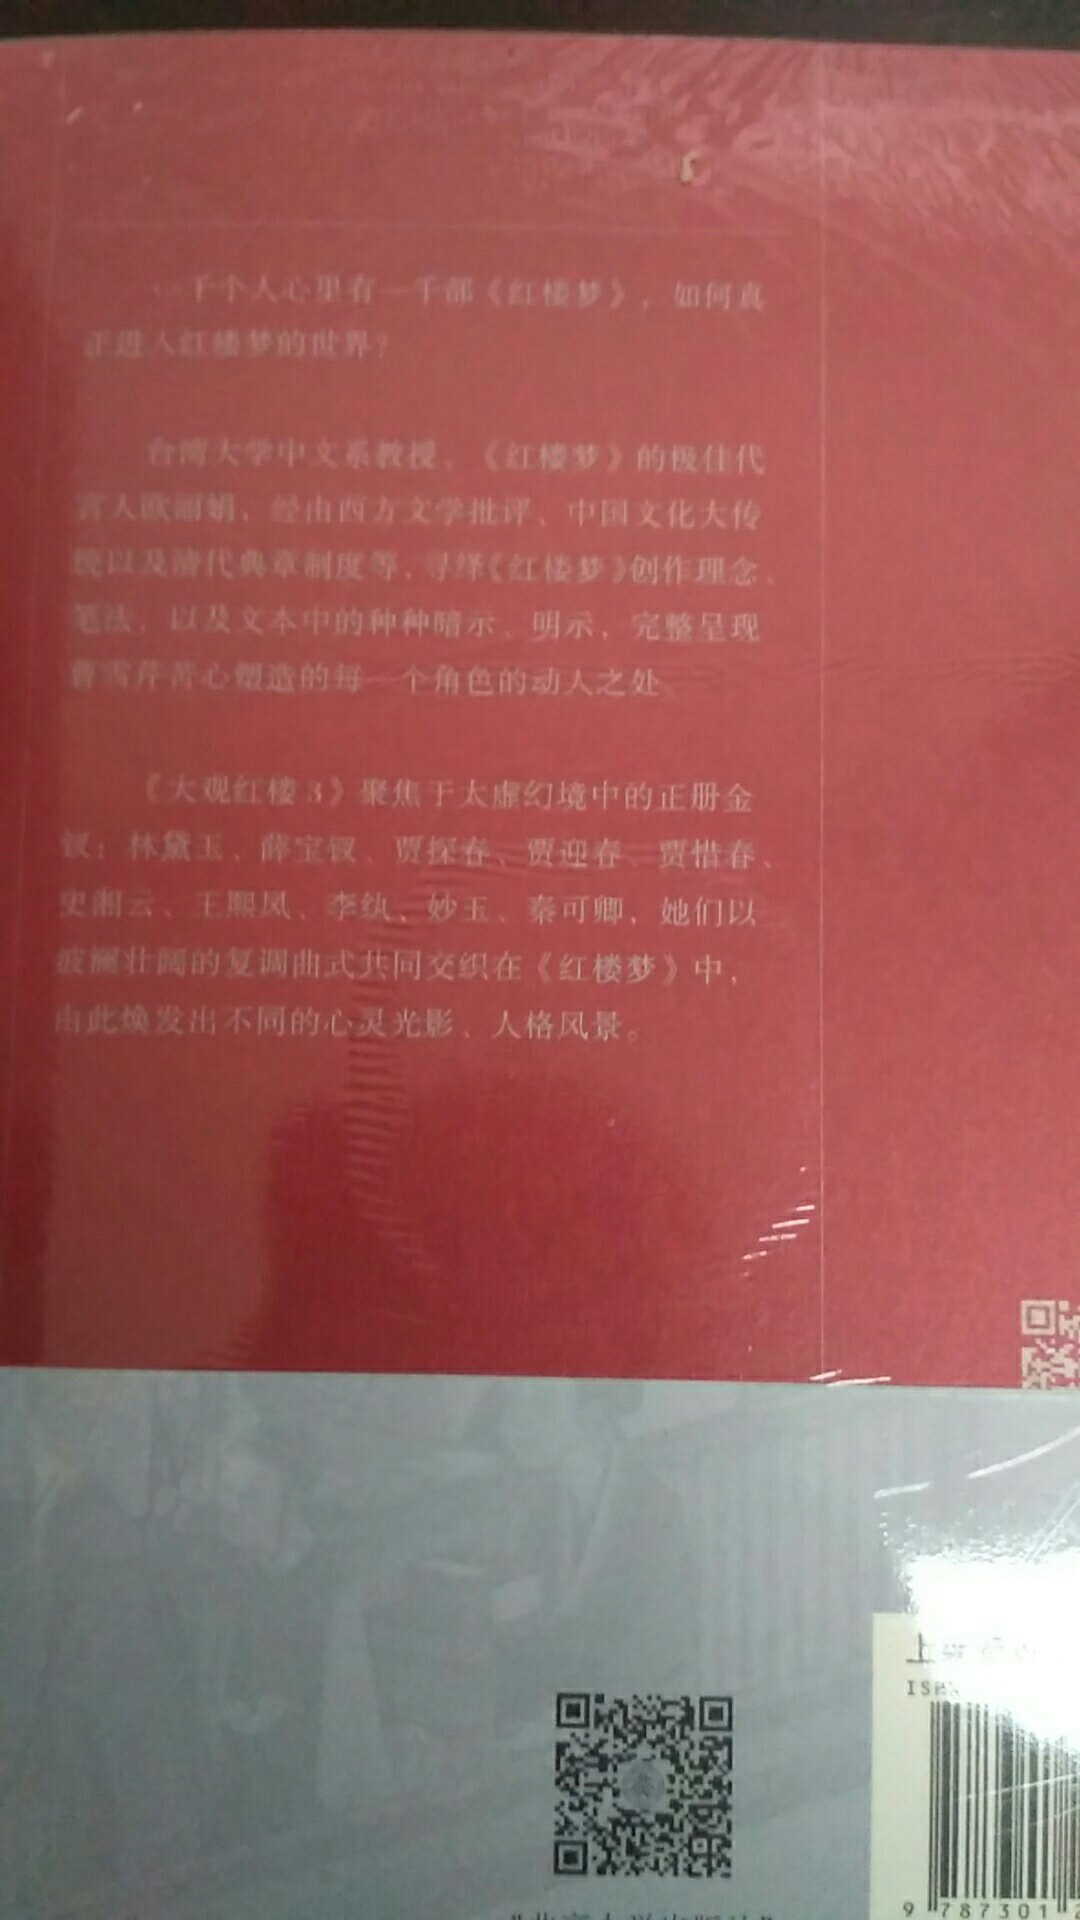 台湾教授讲课的红楼梦，不一样的风格，不久前买过，第一卷，第二卷，不过还没看完，第三，四卷现在出版了，趁着活动购入。第三卷又分为二册，所以整套本是五本的，喜欢红楼梦的朋友不要错过。